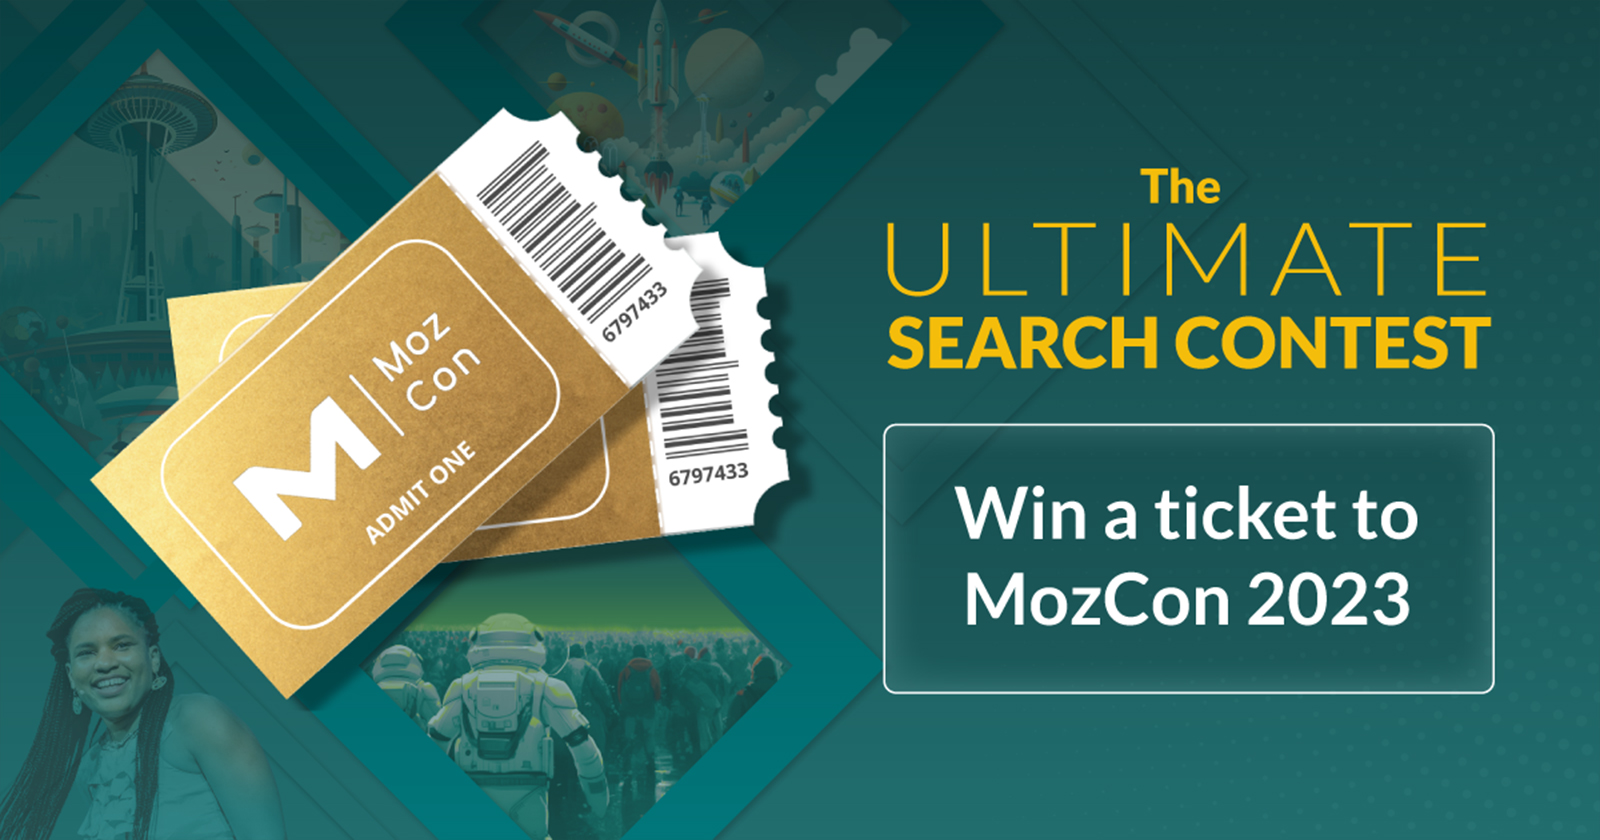 Información de entradas gratuitas de MozCon en el interior: ¿Estás listo para el concurso de búsqueda definitivo?